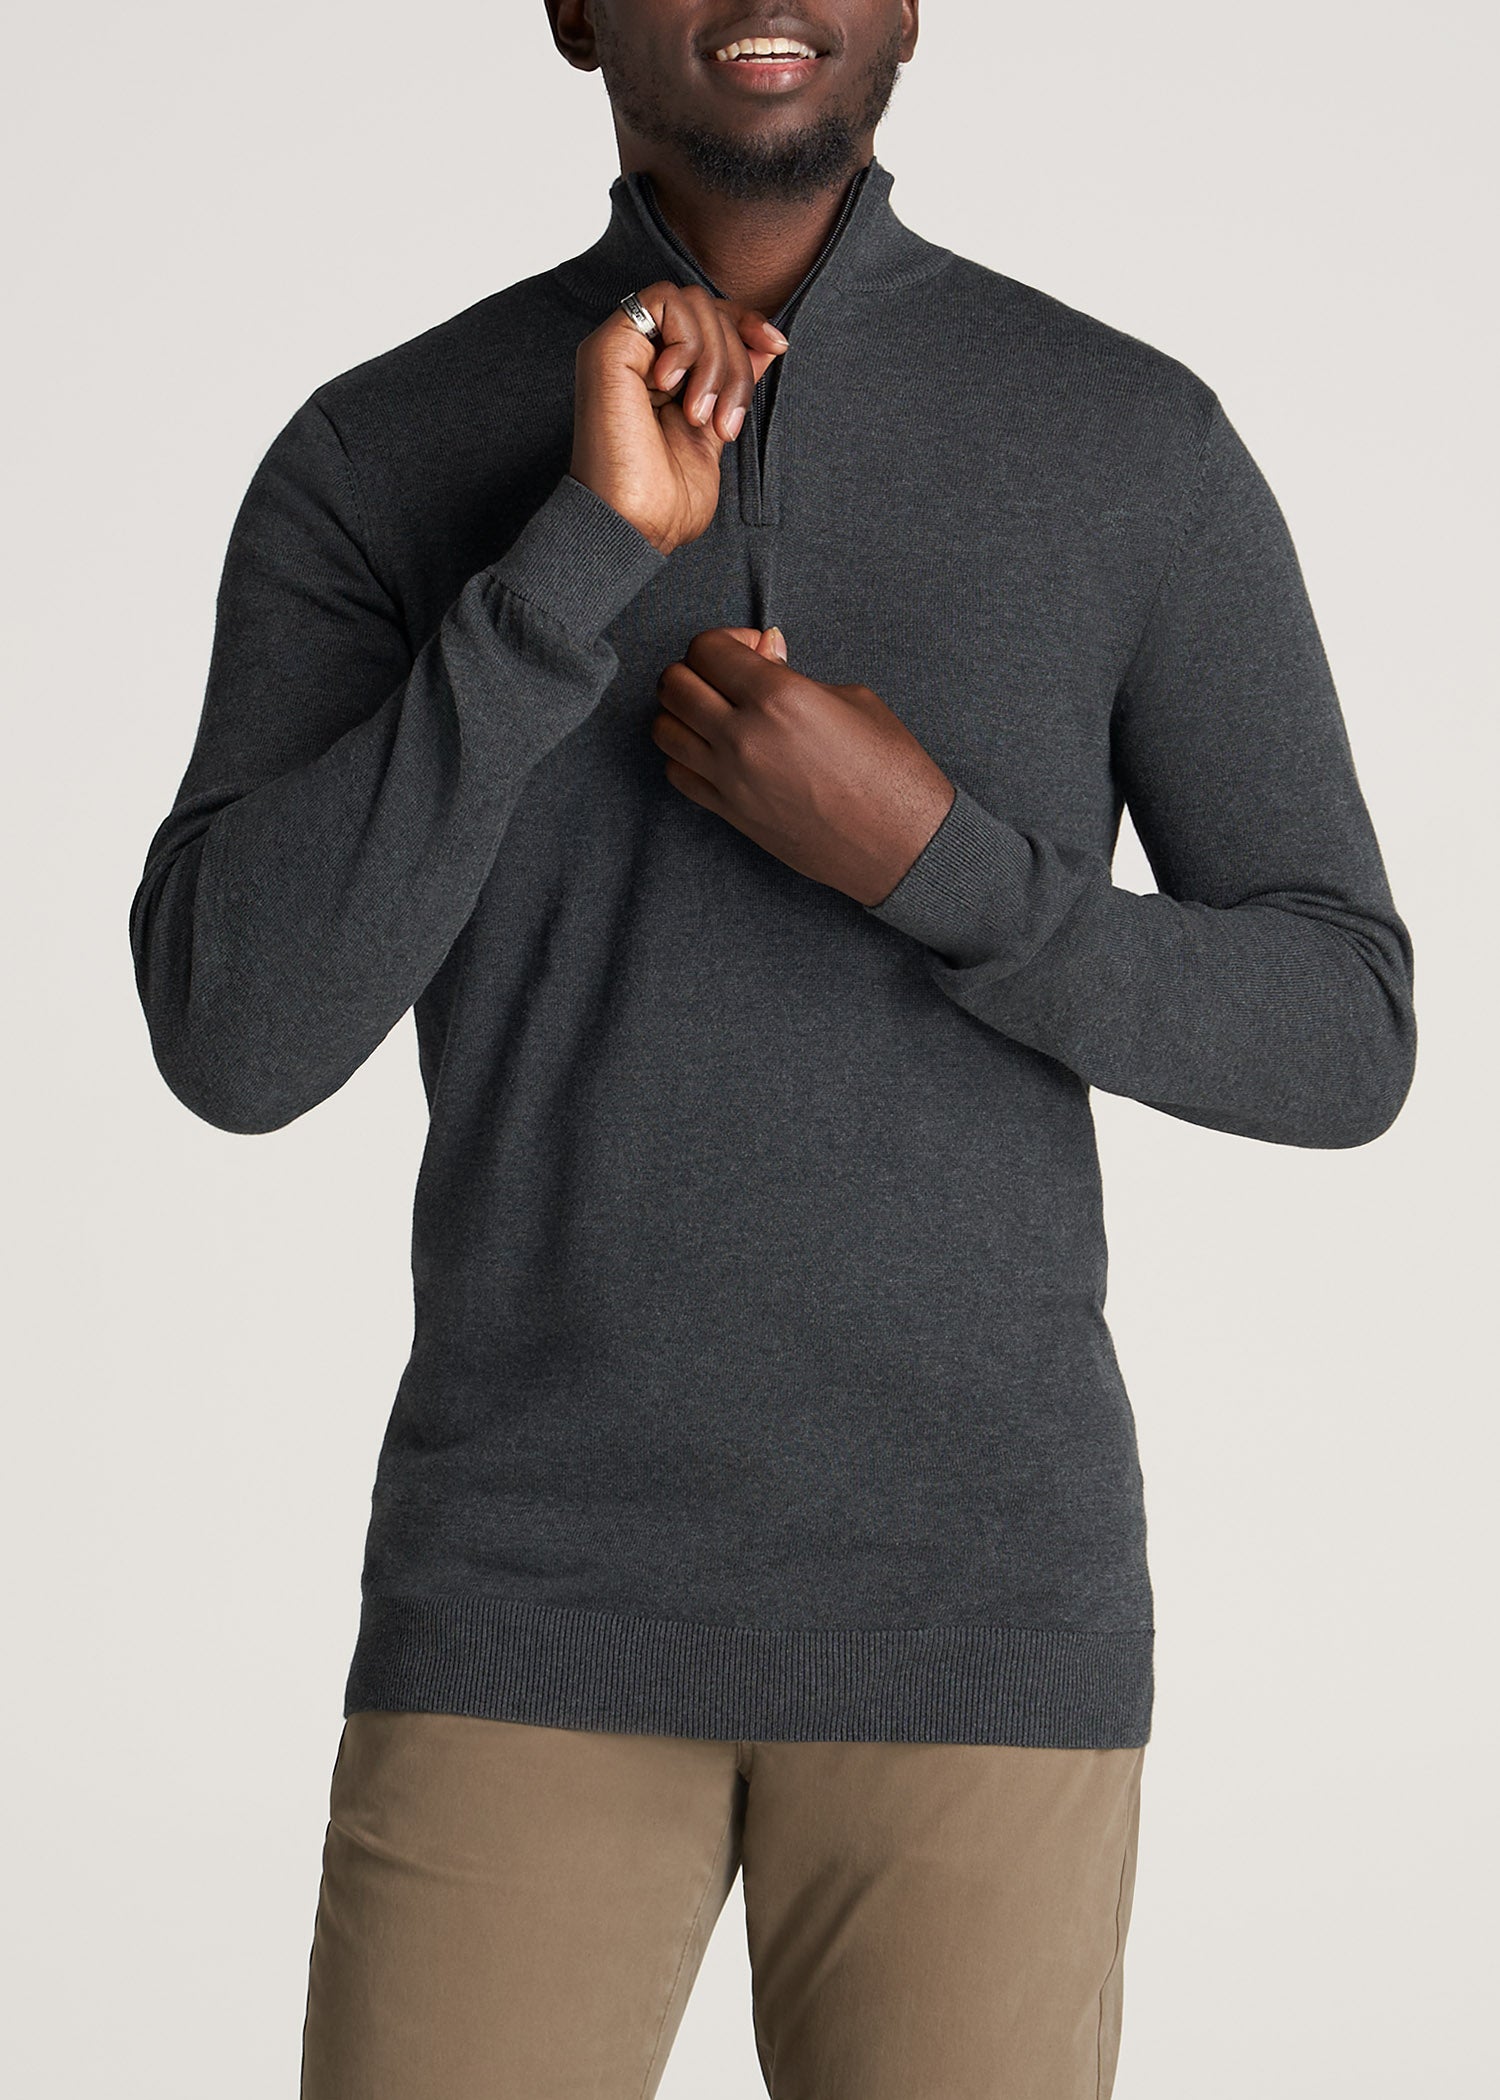 Half Zip for Men, Sweaters